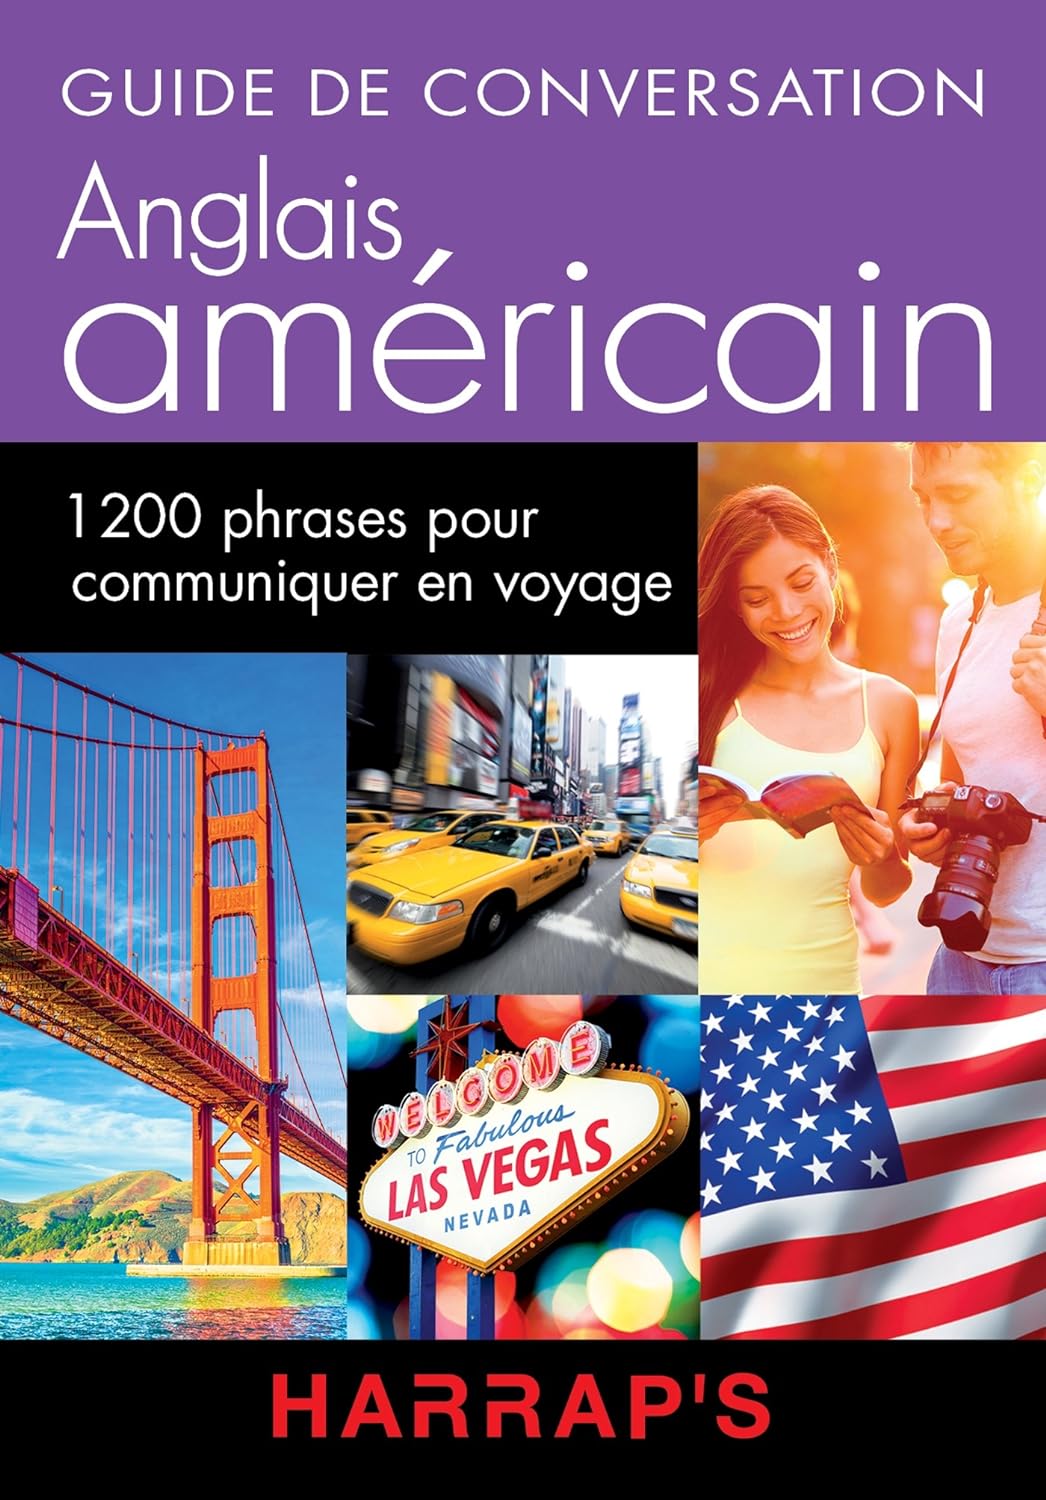 Guide de conversation Anglais américain : 1200 phrase pour communiquer en voyage